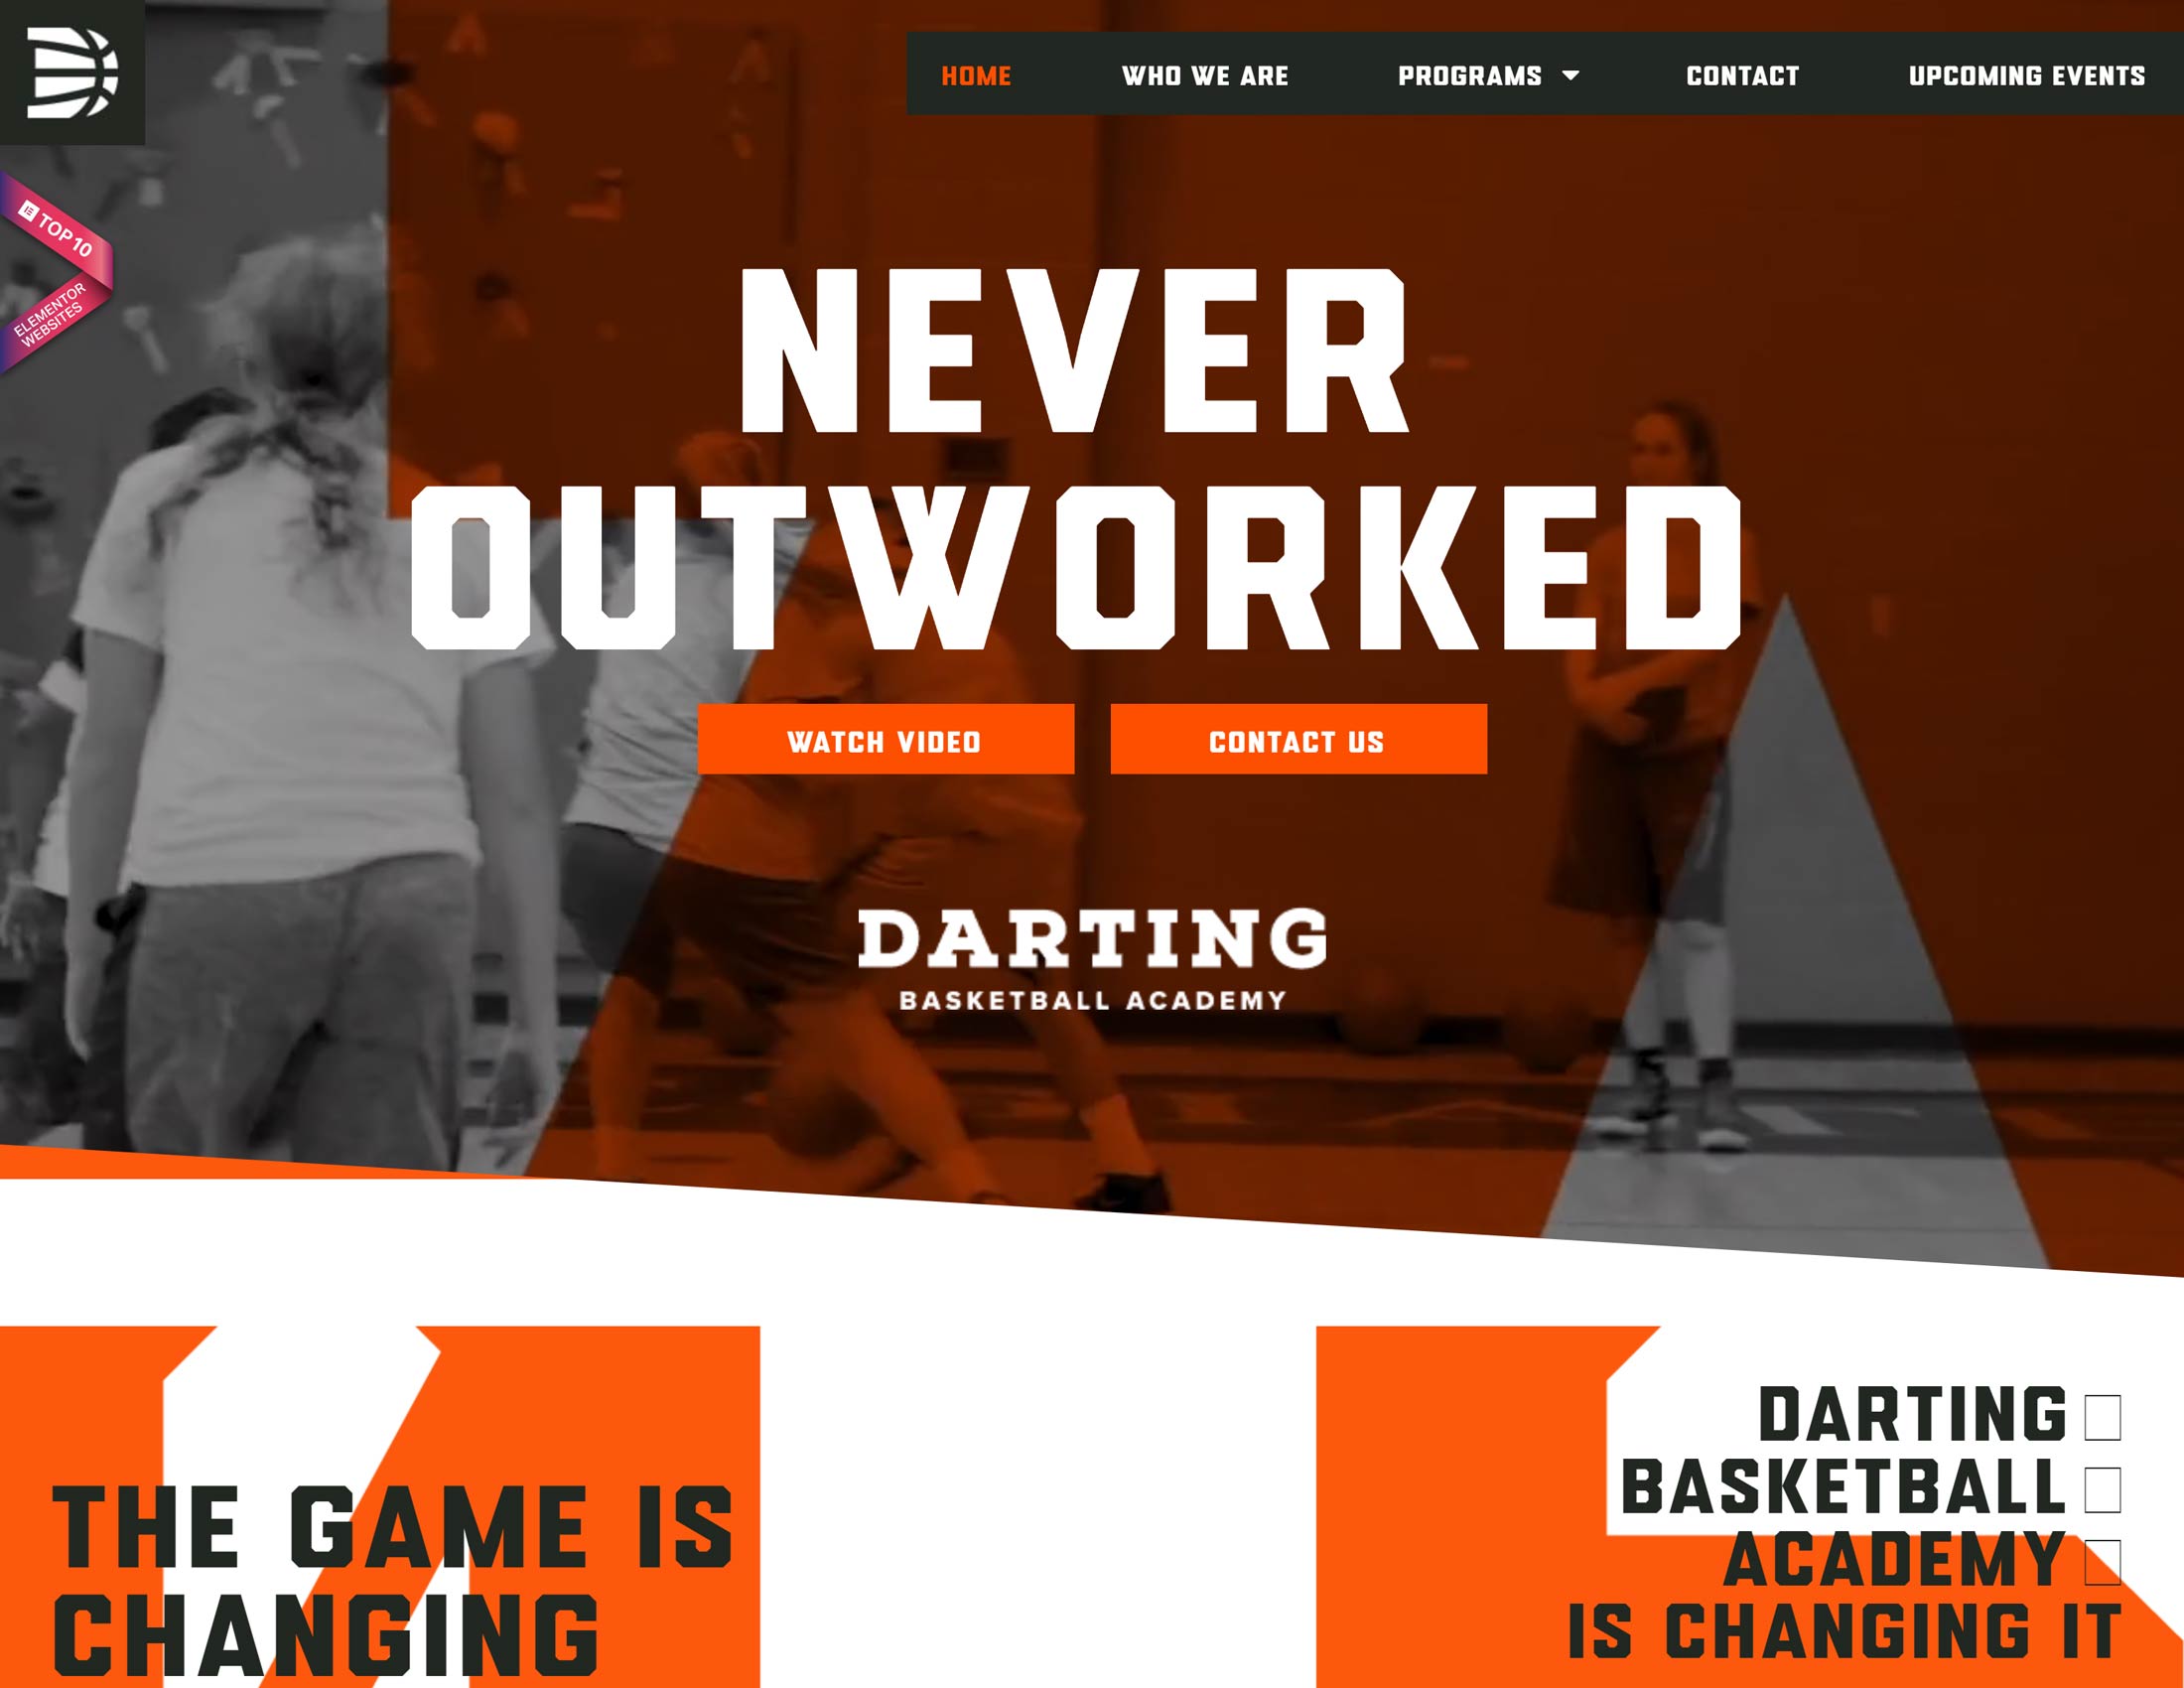 Darting Basketball Academy